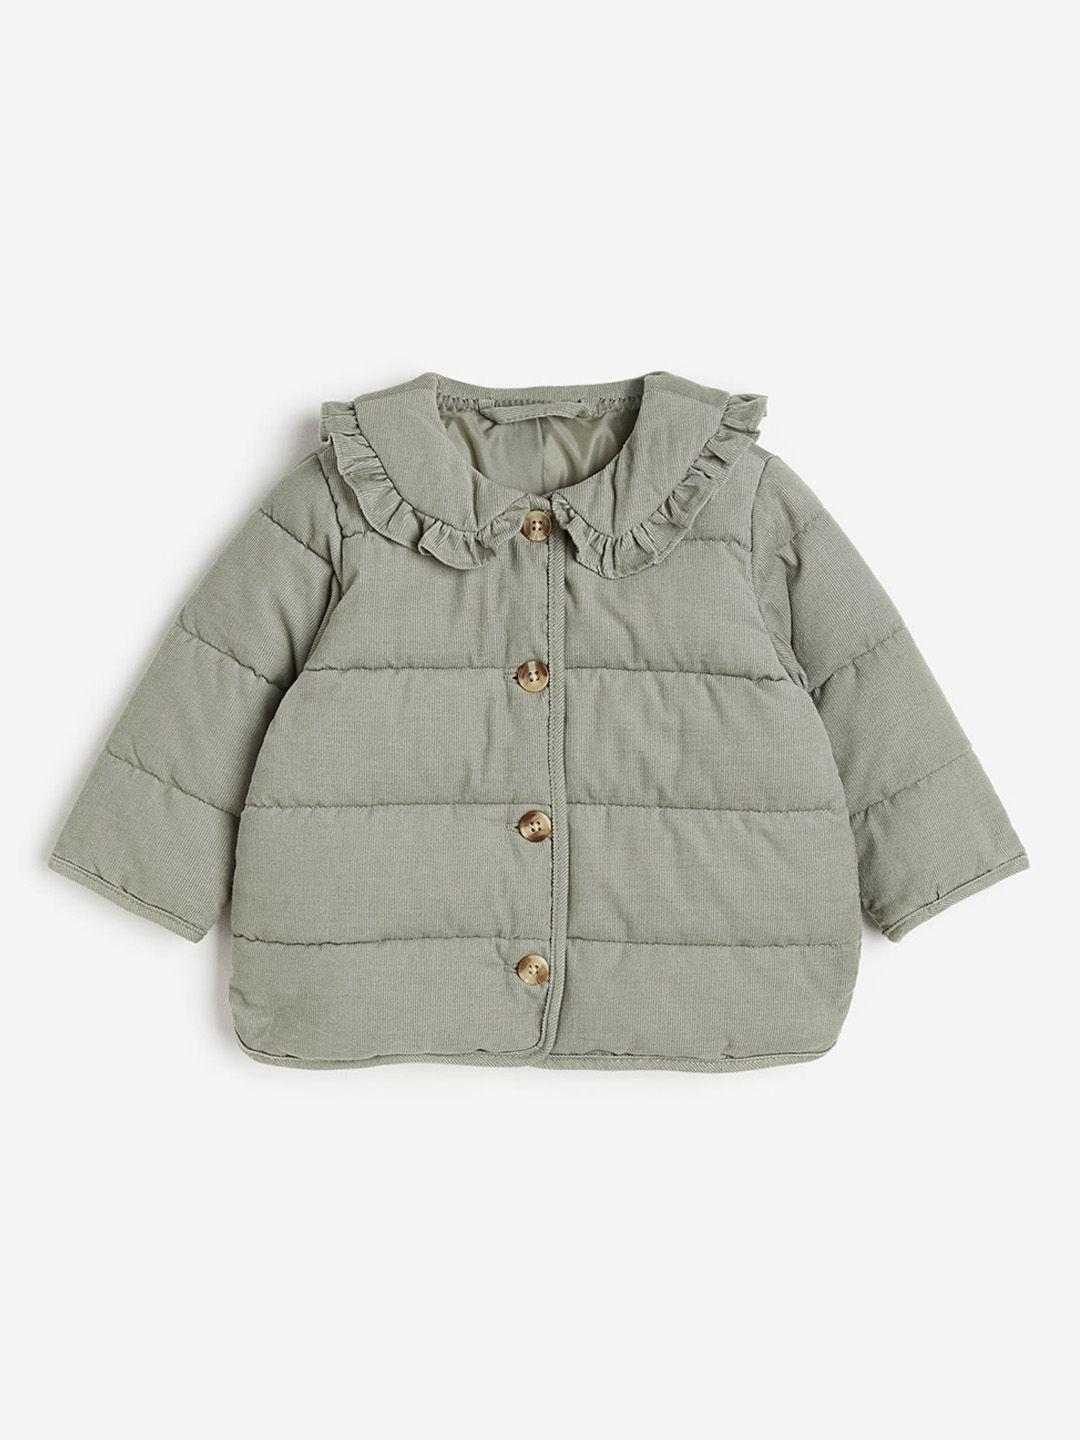 h&m boys pure cotton corduroy jackets